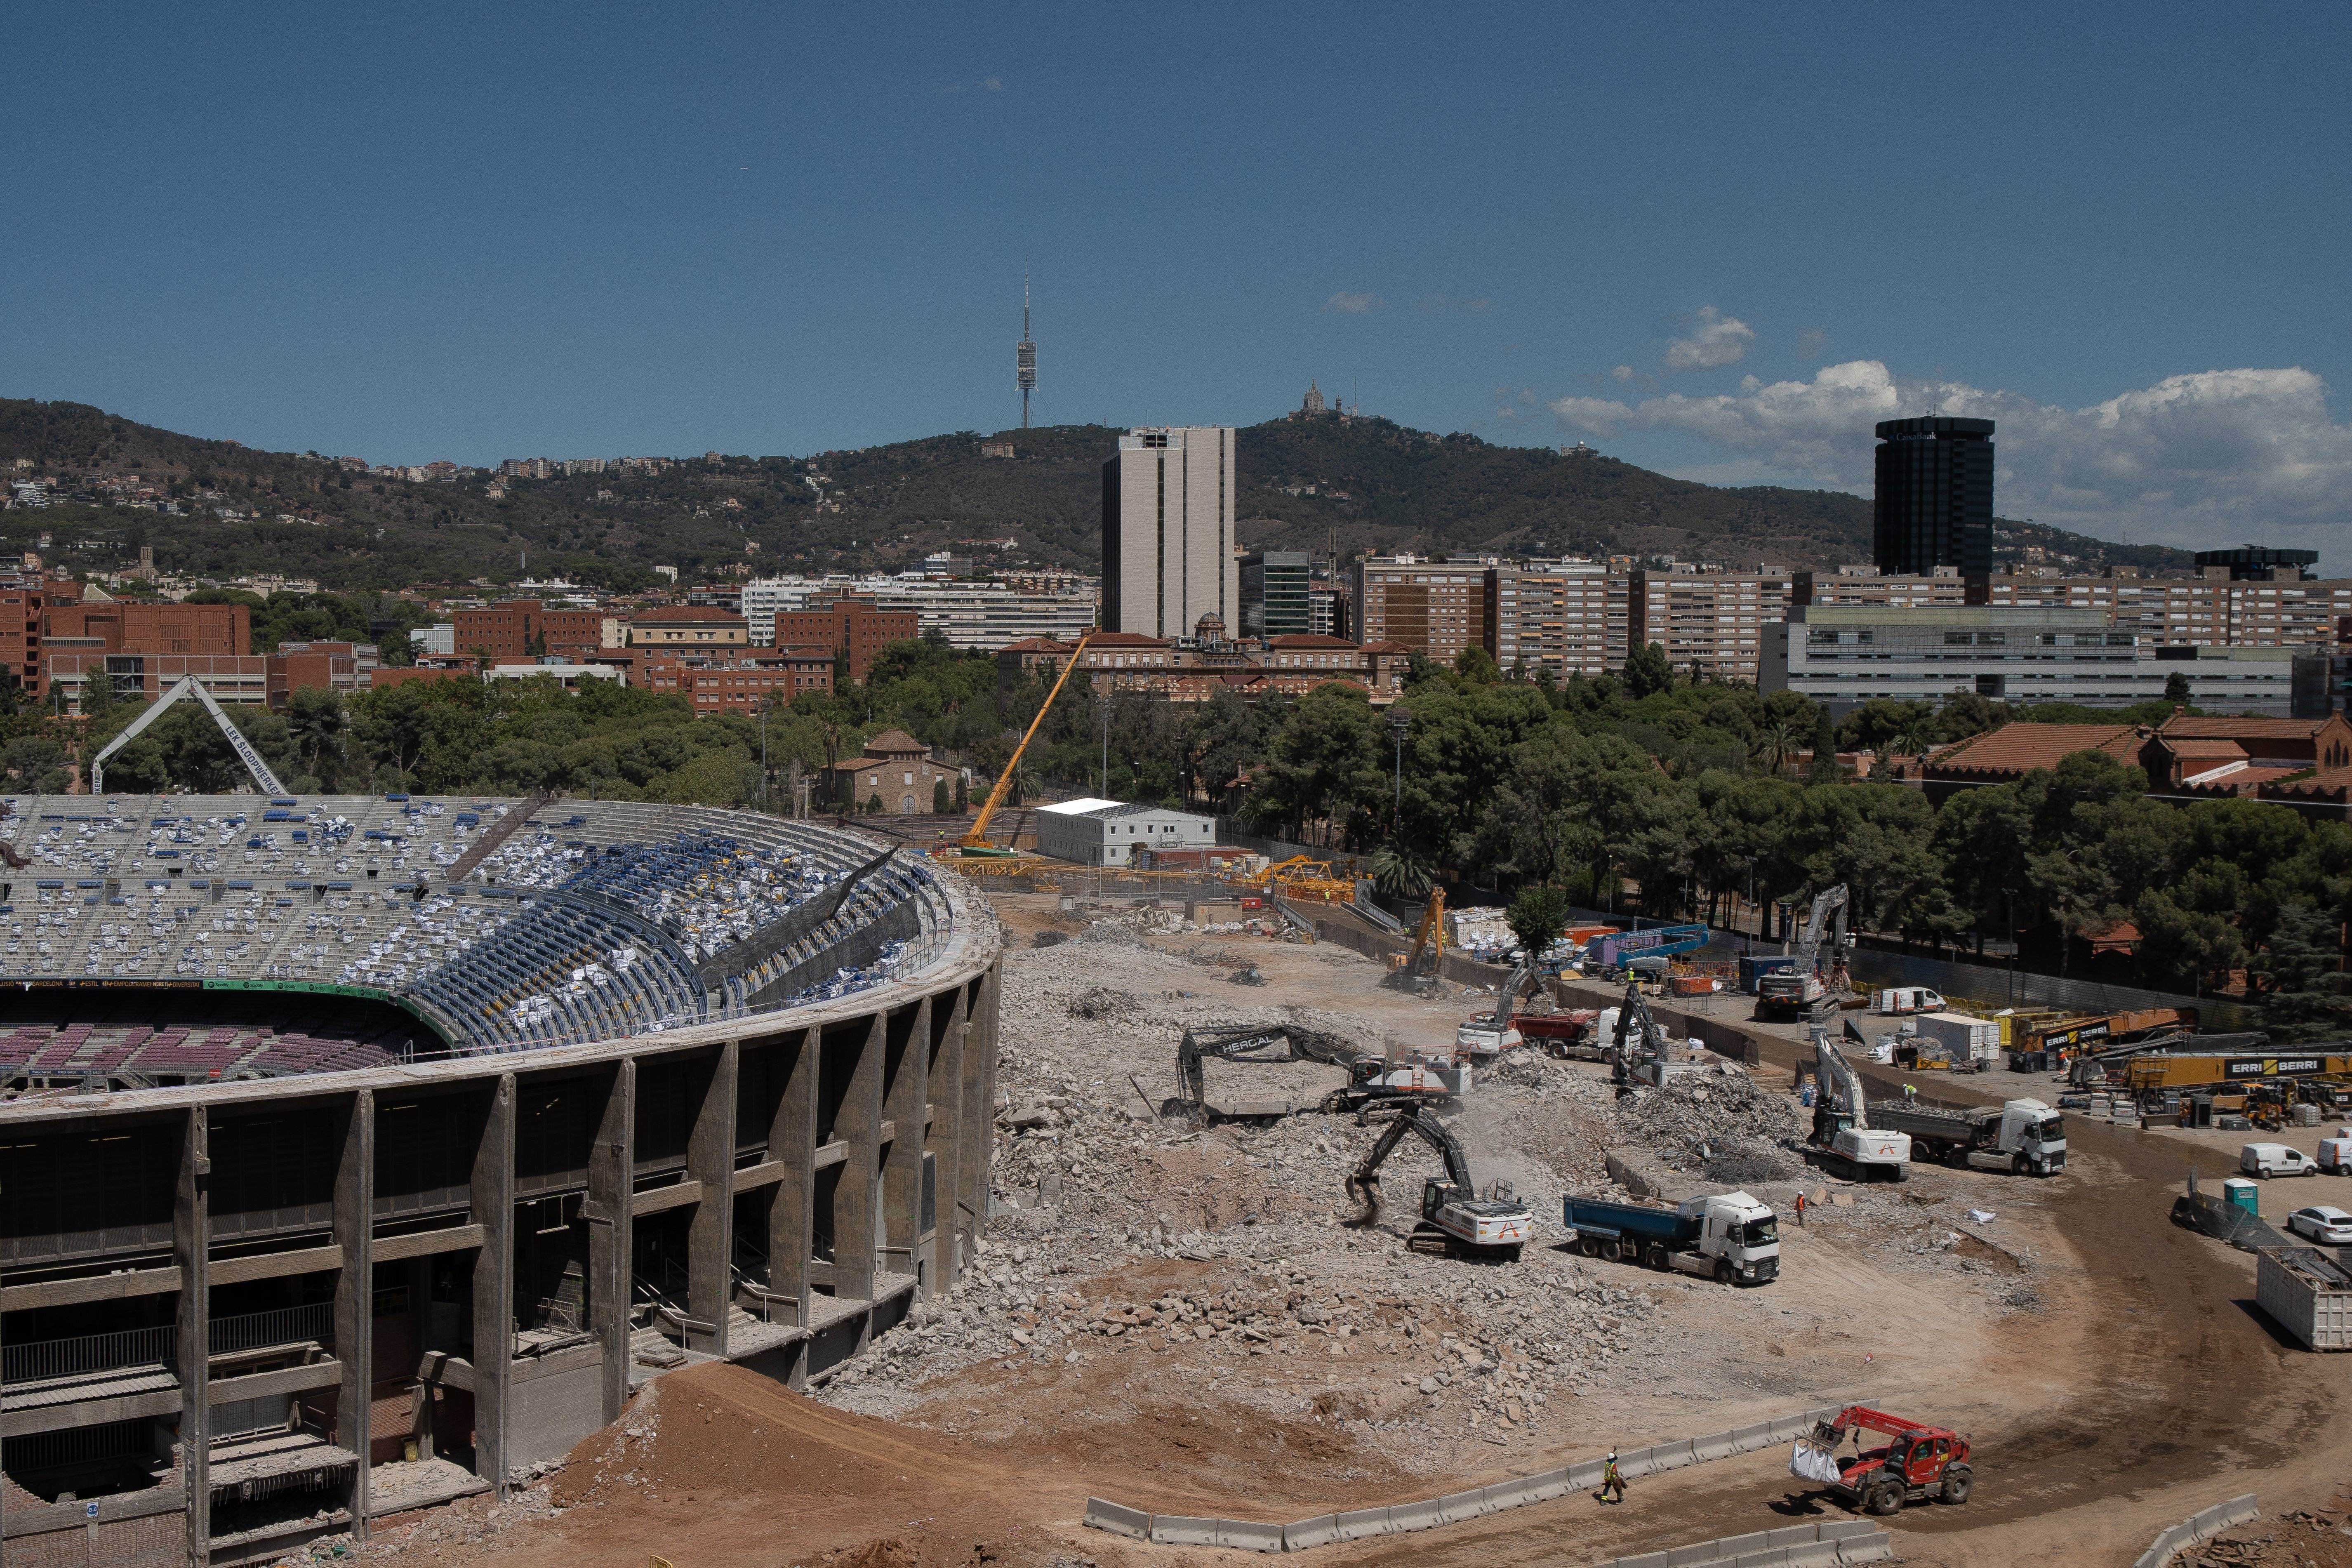 Les sorprenents imatges del Camp Nou en construcció i totalment irreconeixible | VÍDEO